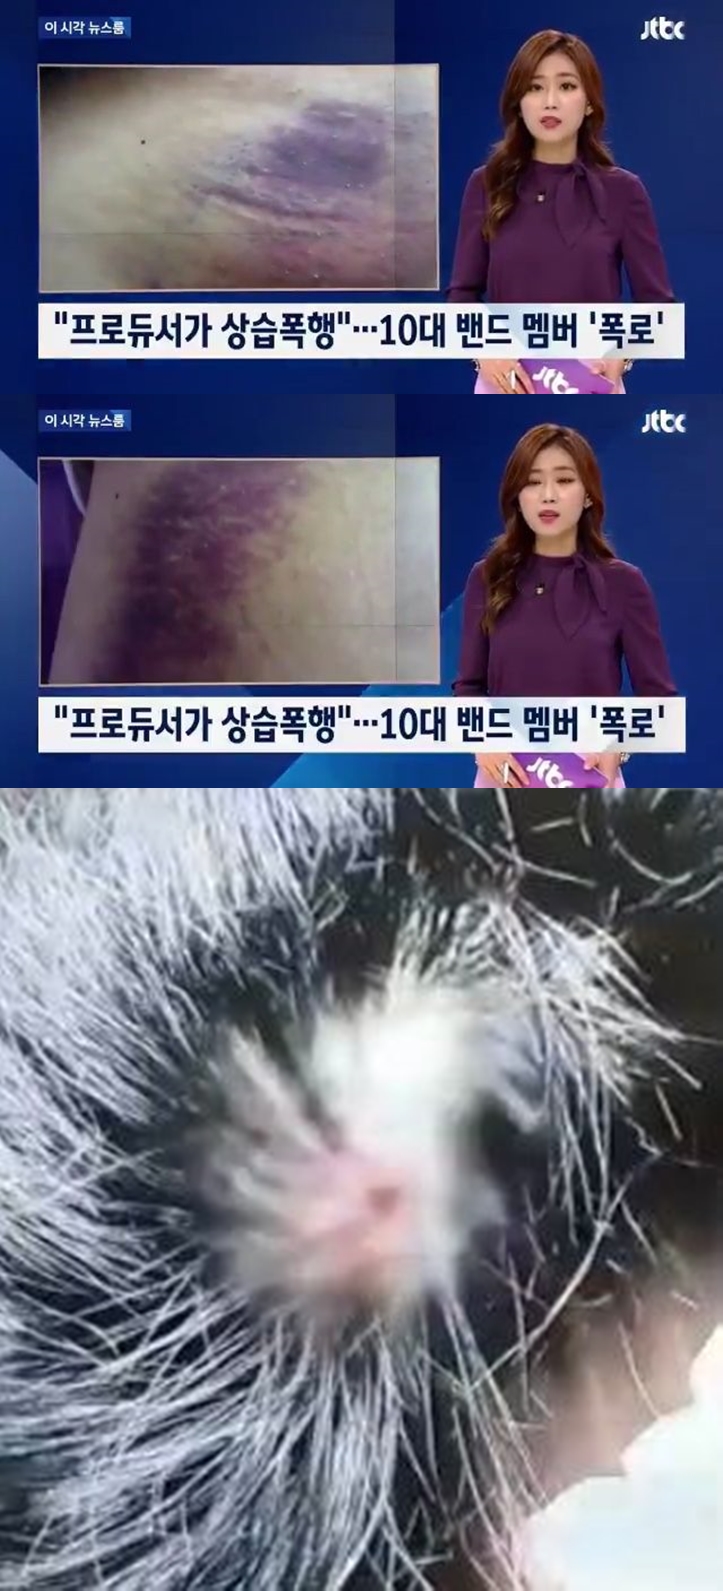 더 이스트라이트 상처 / JTBC 방송 캡처, 온라인 커뮤니티